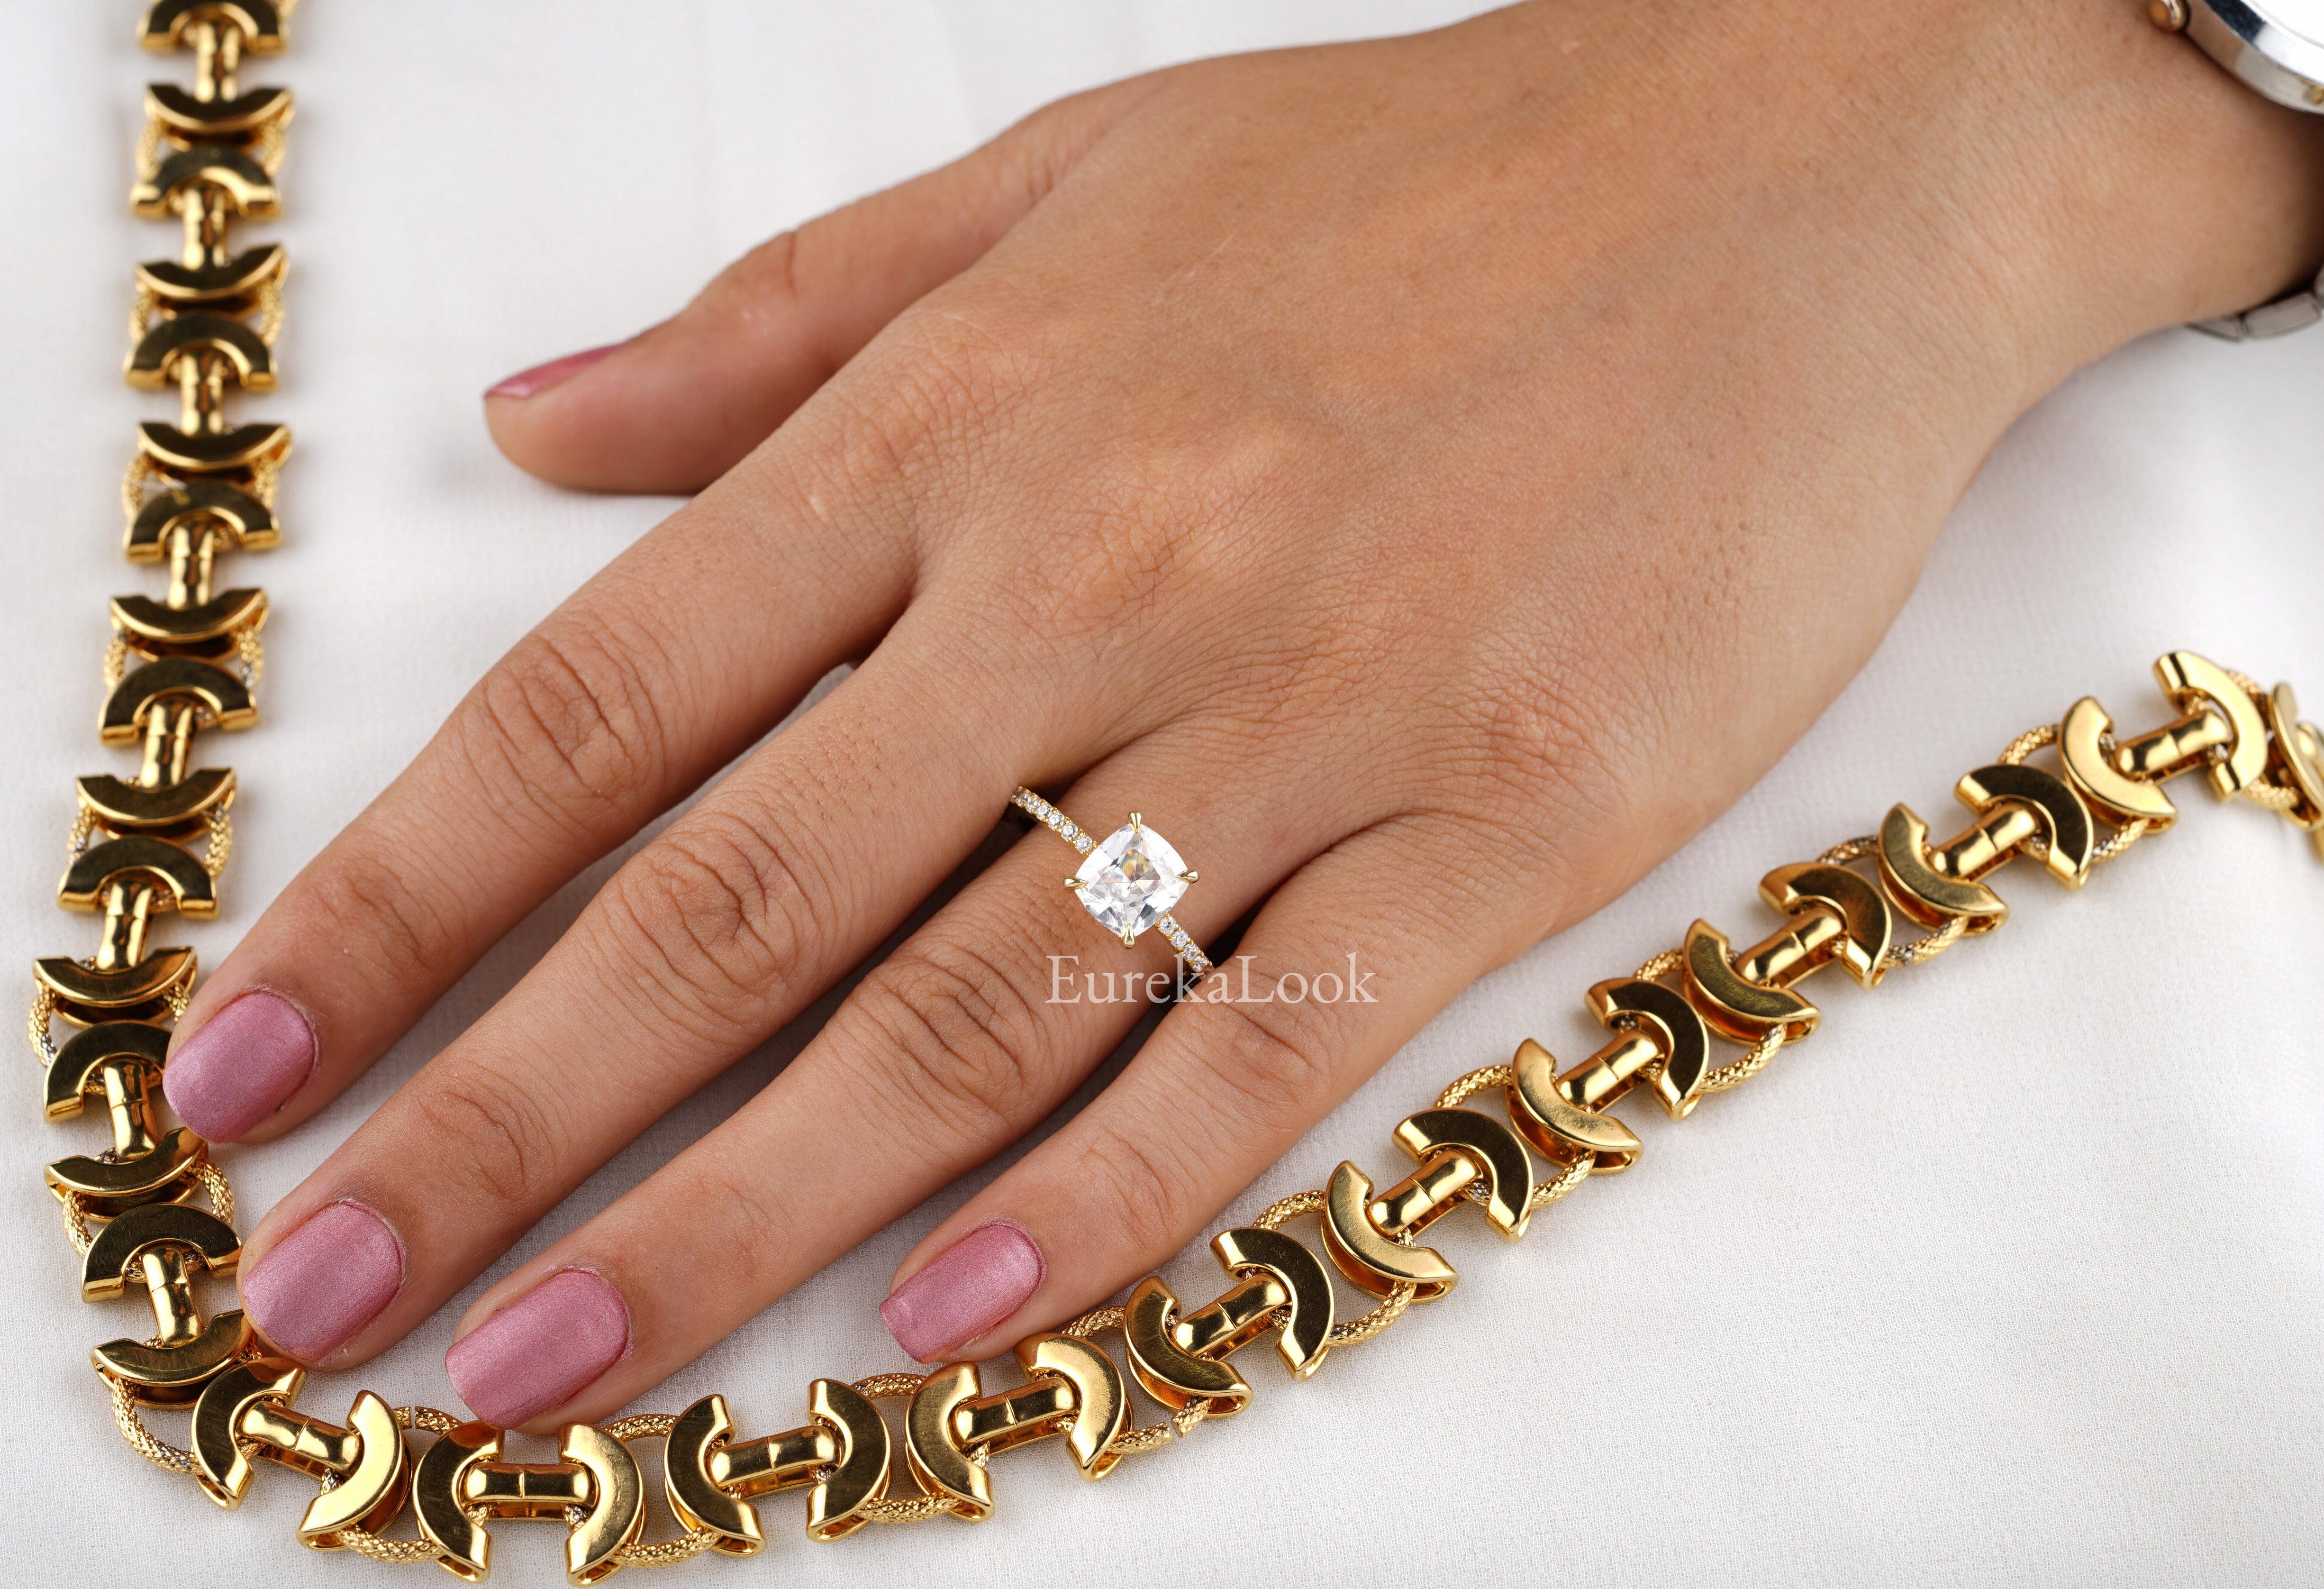 14K Solid Yellow Gold Cushion Cut Moissanite Wedding Ring - Eurekalook